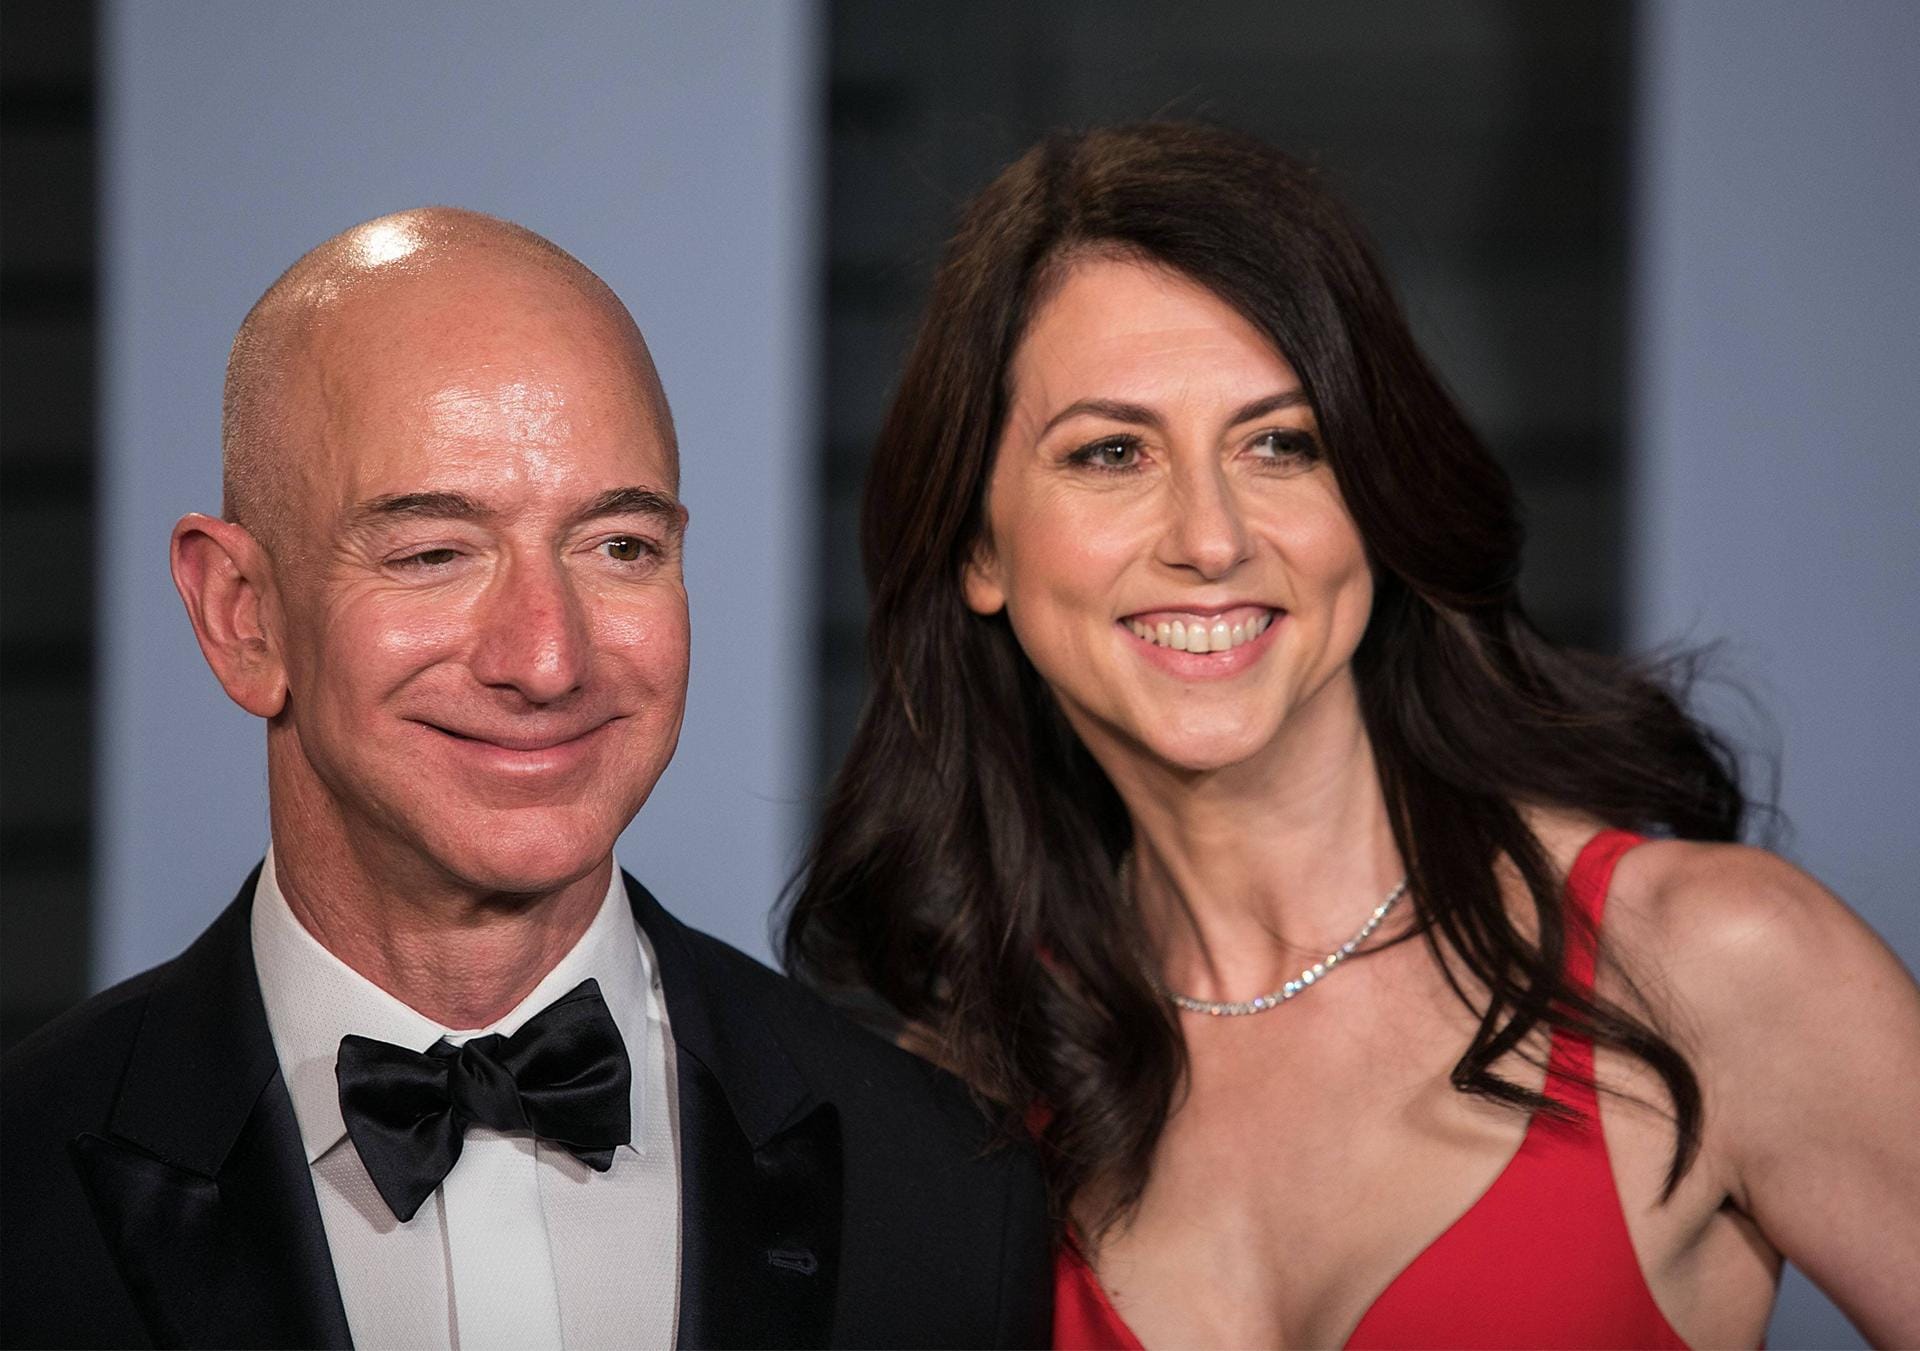 Jeff Bezos und McKenzie Bezos: Durch die Scheidung von Jeff bekommt McKenzie 38 Milliarden Dollar zugesprochen. Das katapultiert sie in die Reichen-Listen.